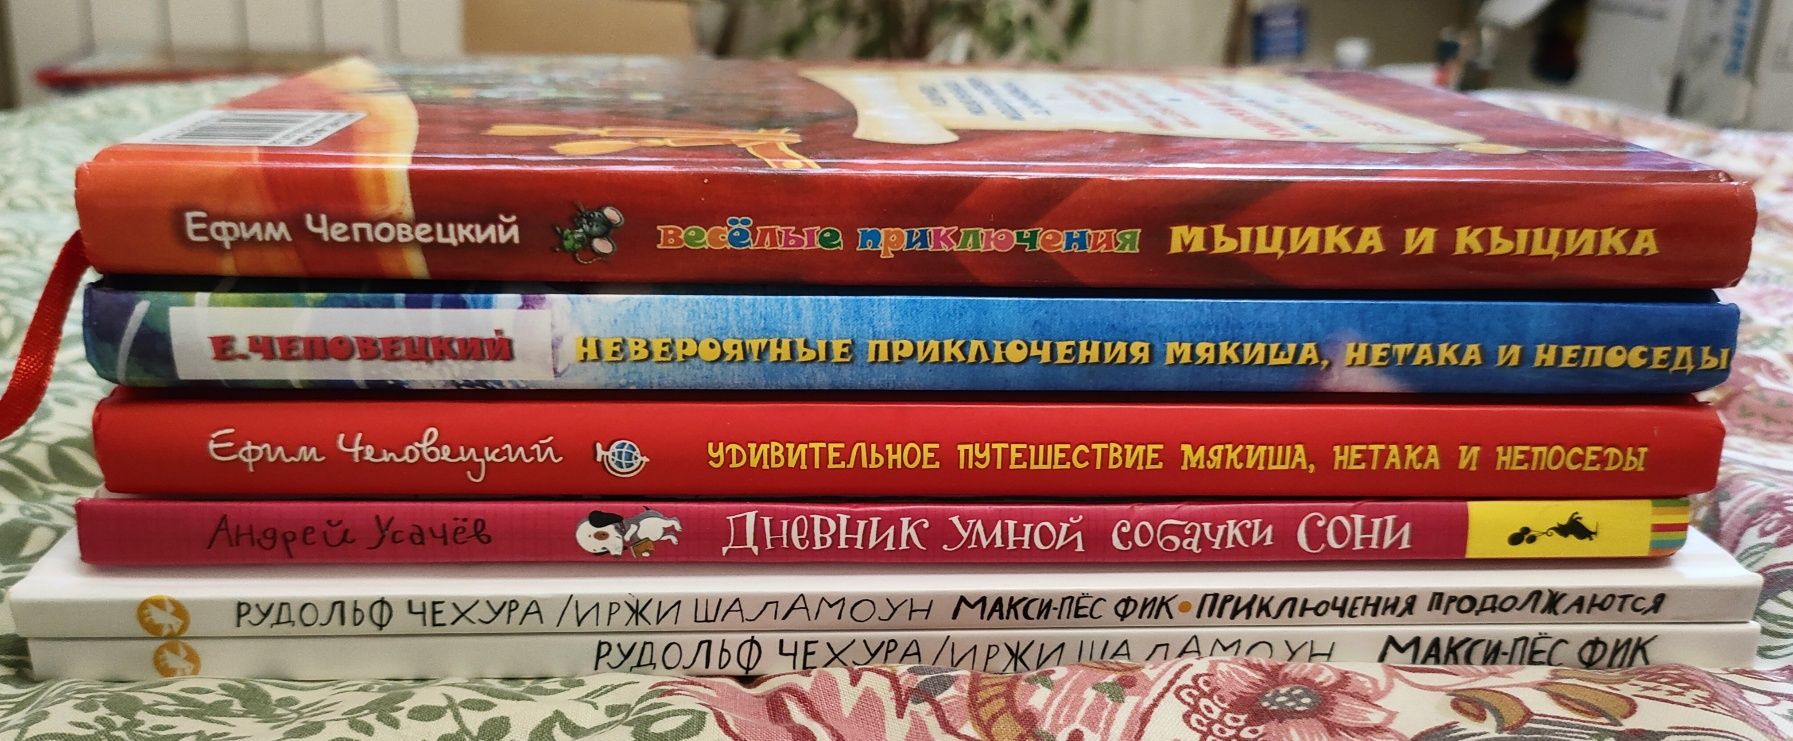 Дитячі книги. Соня, Мякиш, Нетак, Макси-пес Фик, Мыцик и Кыцик